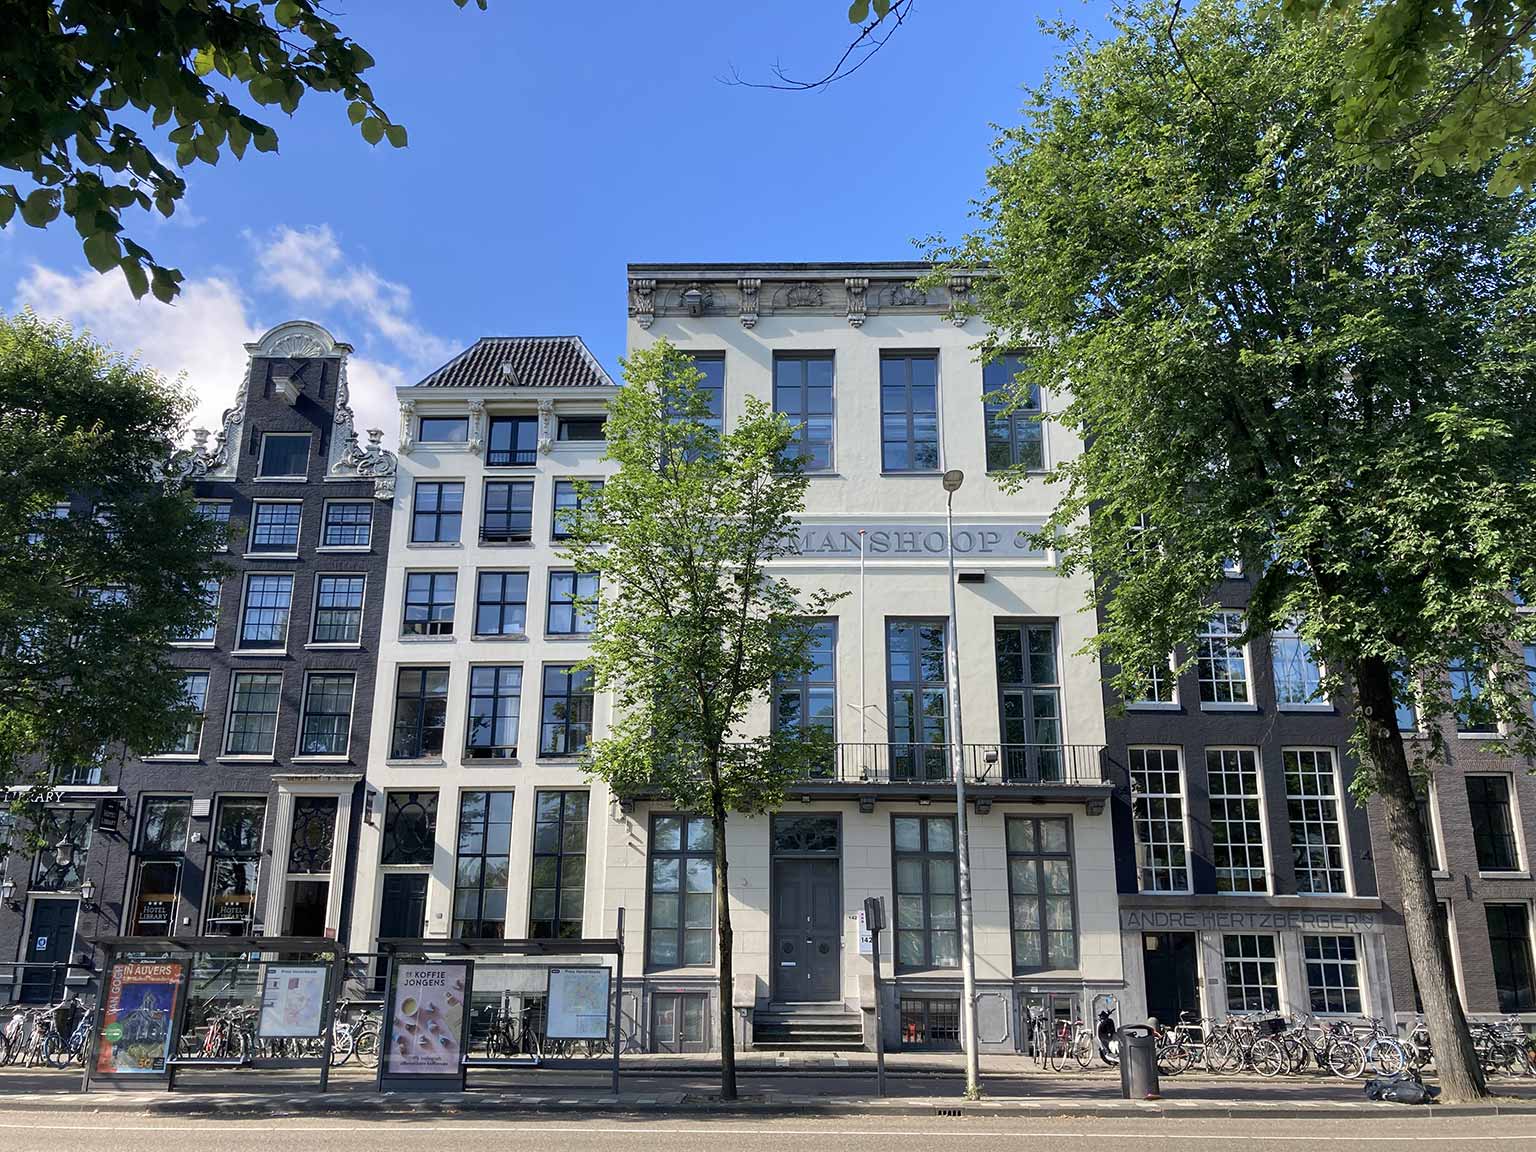 Zeemanshoop building at Prins Hendrikkade 142, Amsterdam